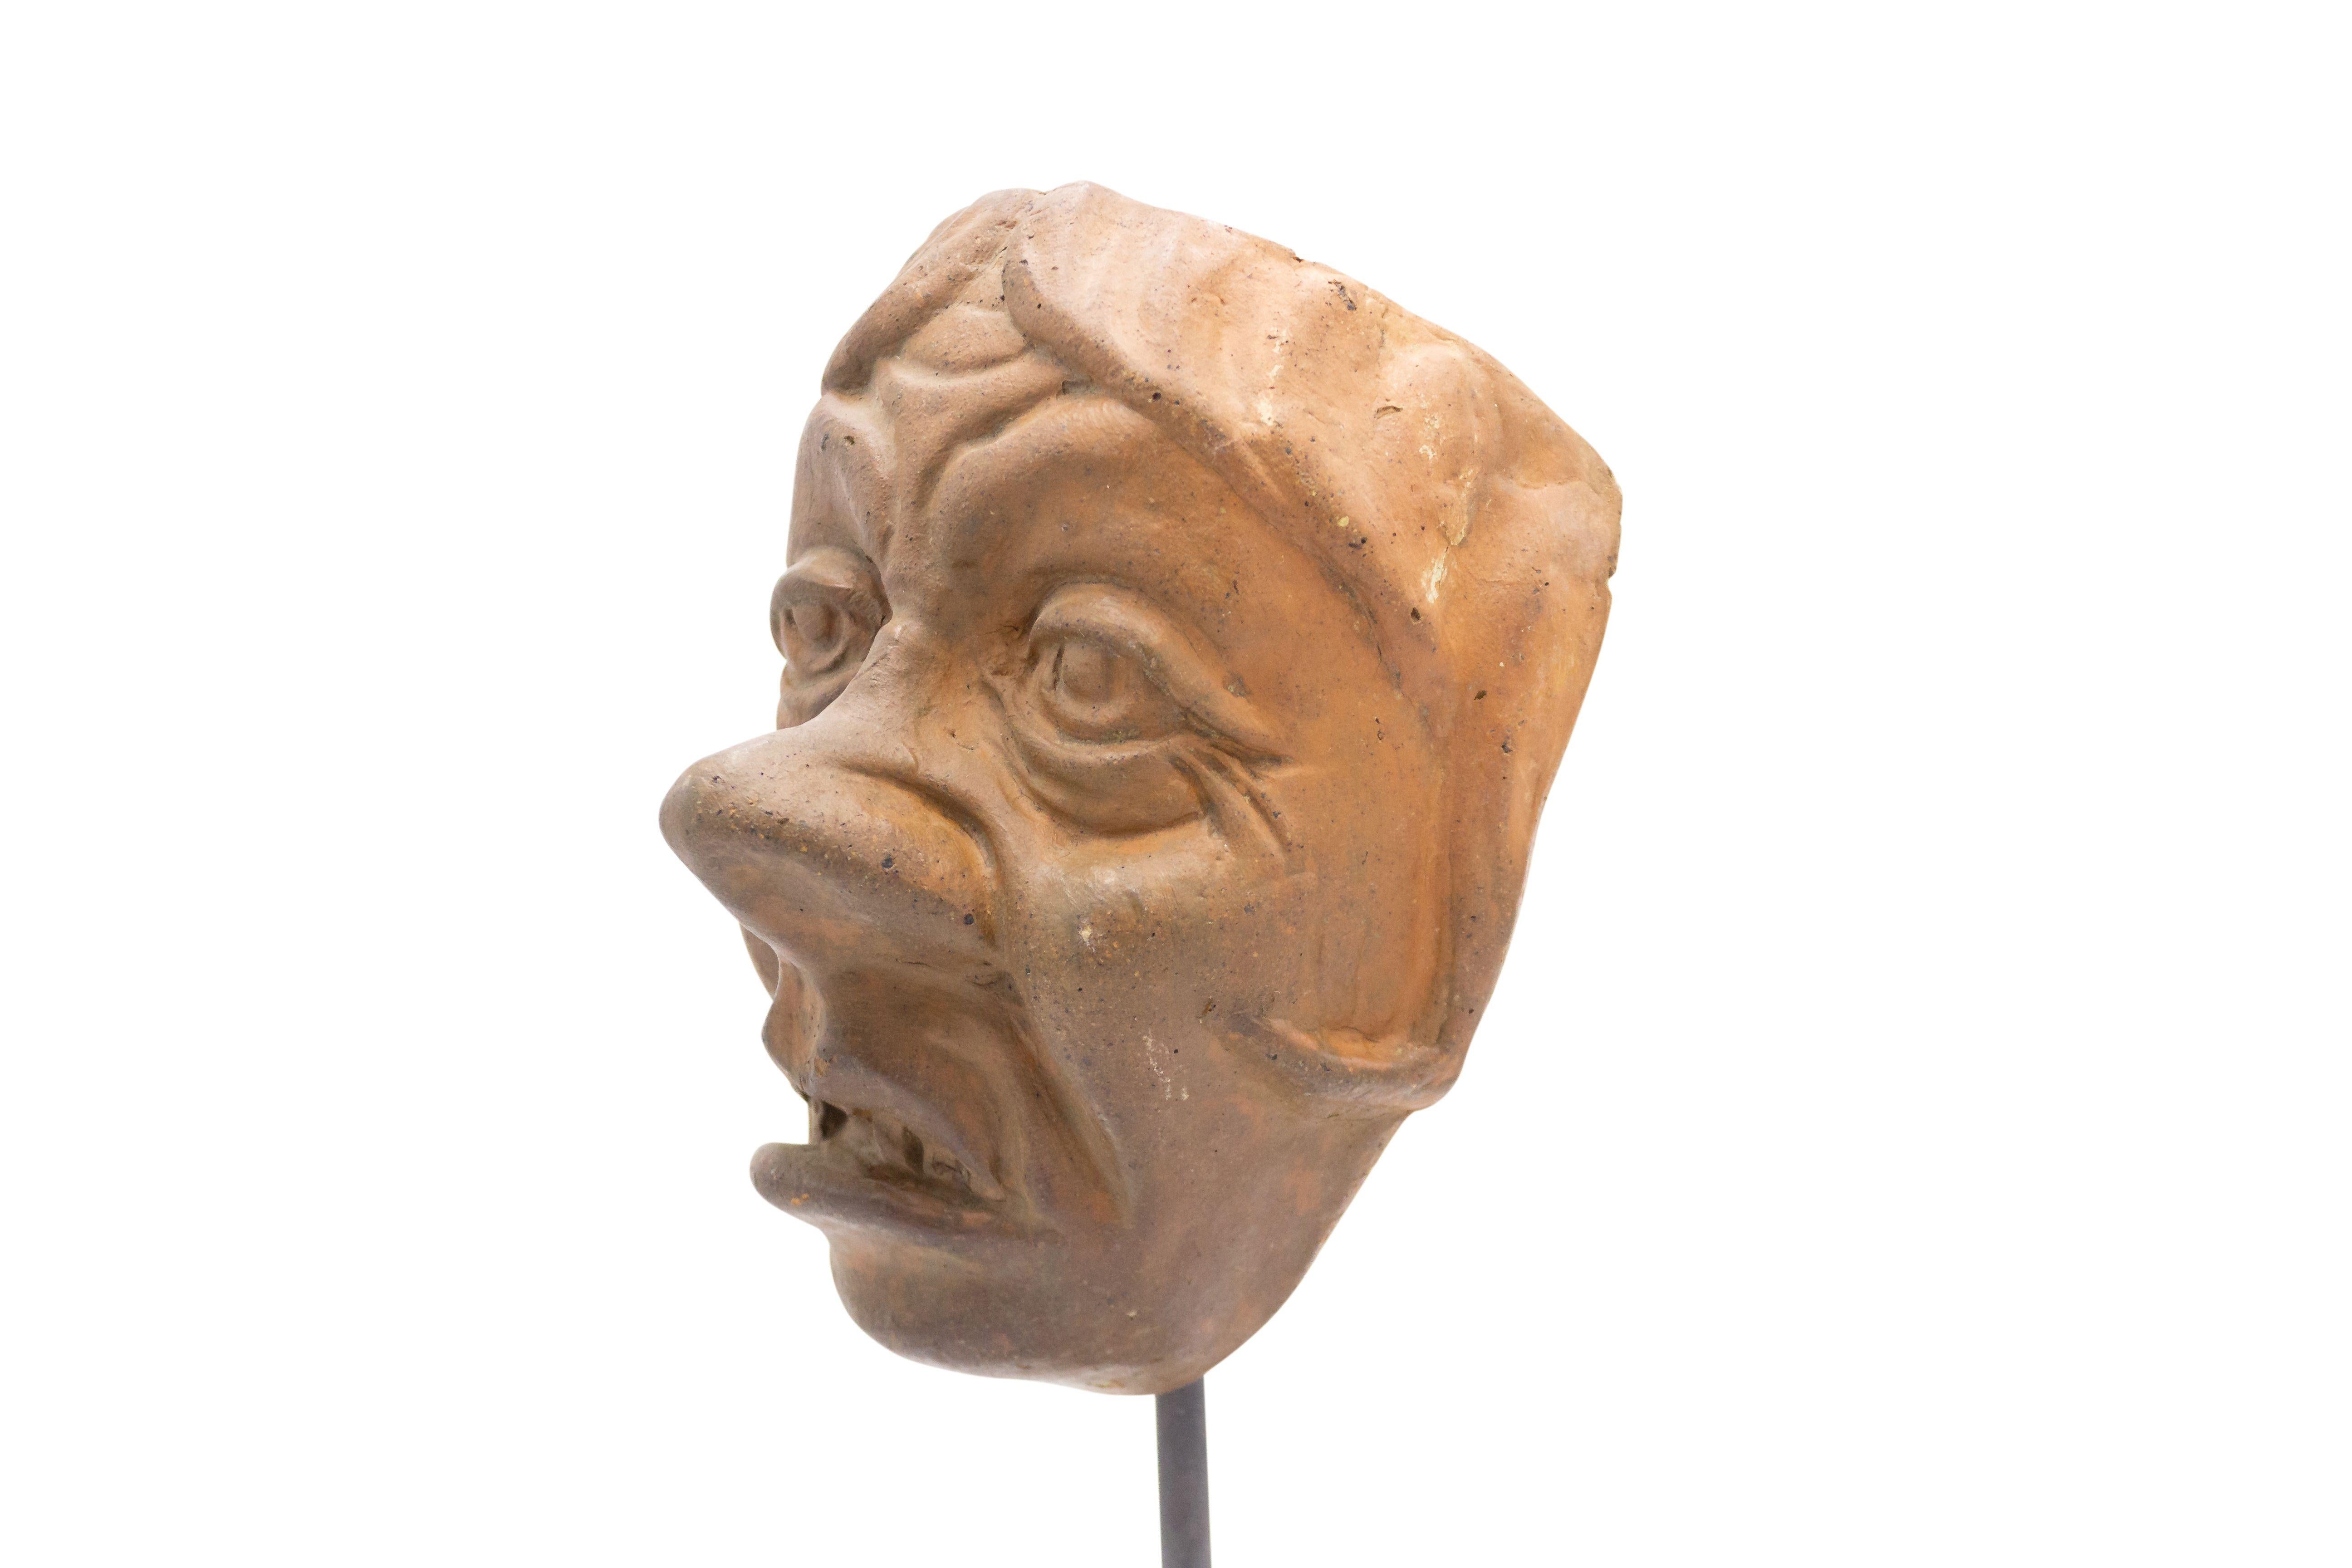 Moule de masque de maître en terre cuite sculpté en Allemagne continentale (fin du 19e siècle) représentant un visage rieur et ridé, présenté sur un socle carré en marbre noir (faisant partie d'une collection).
     